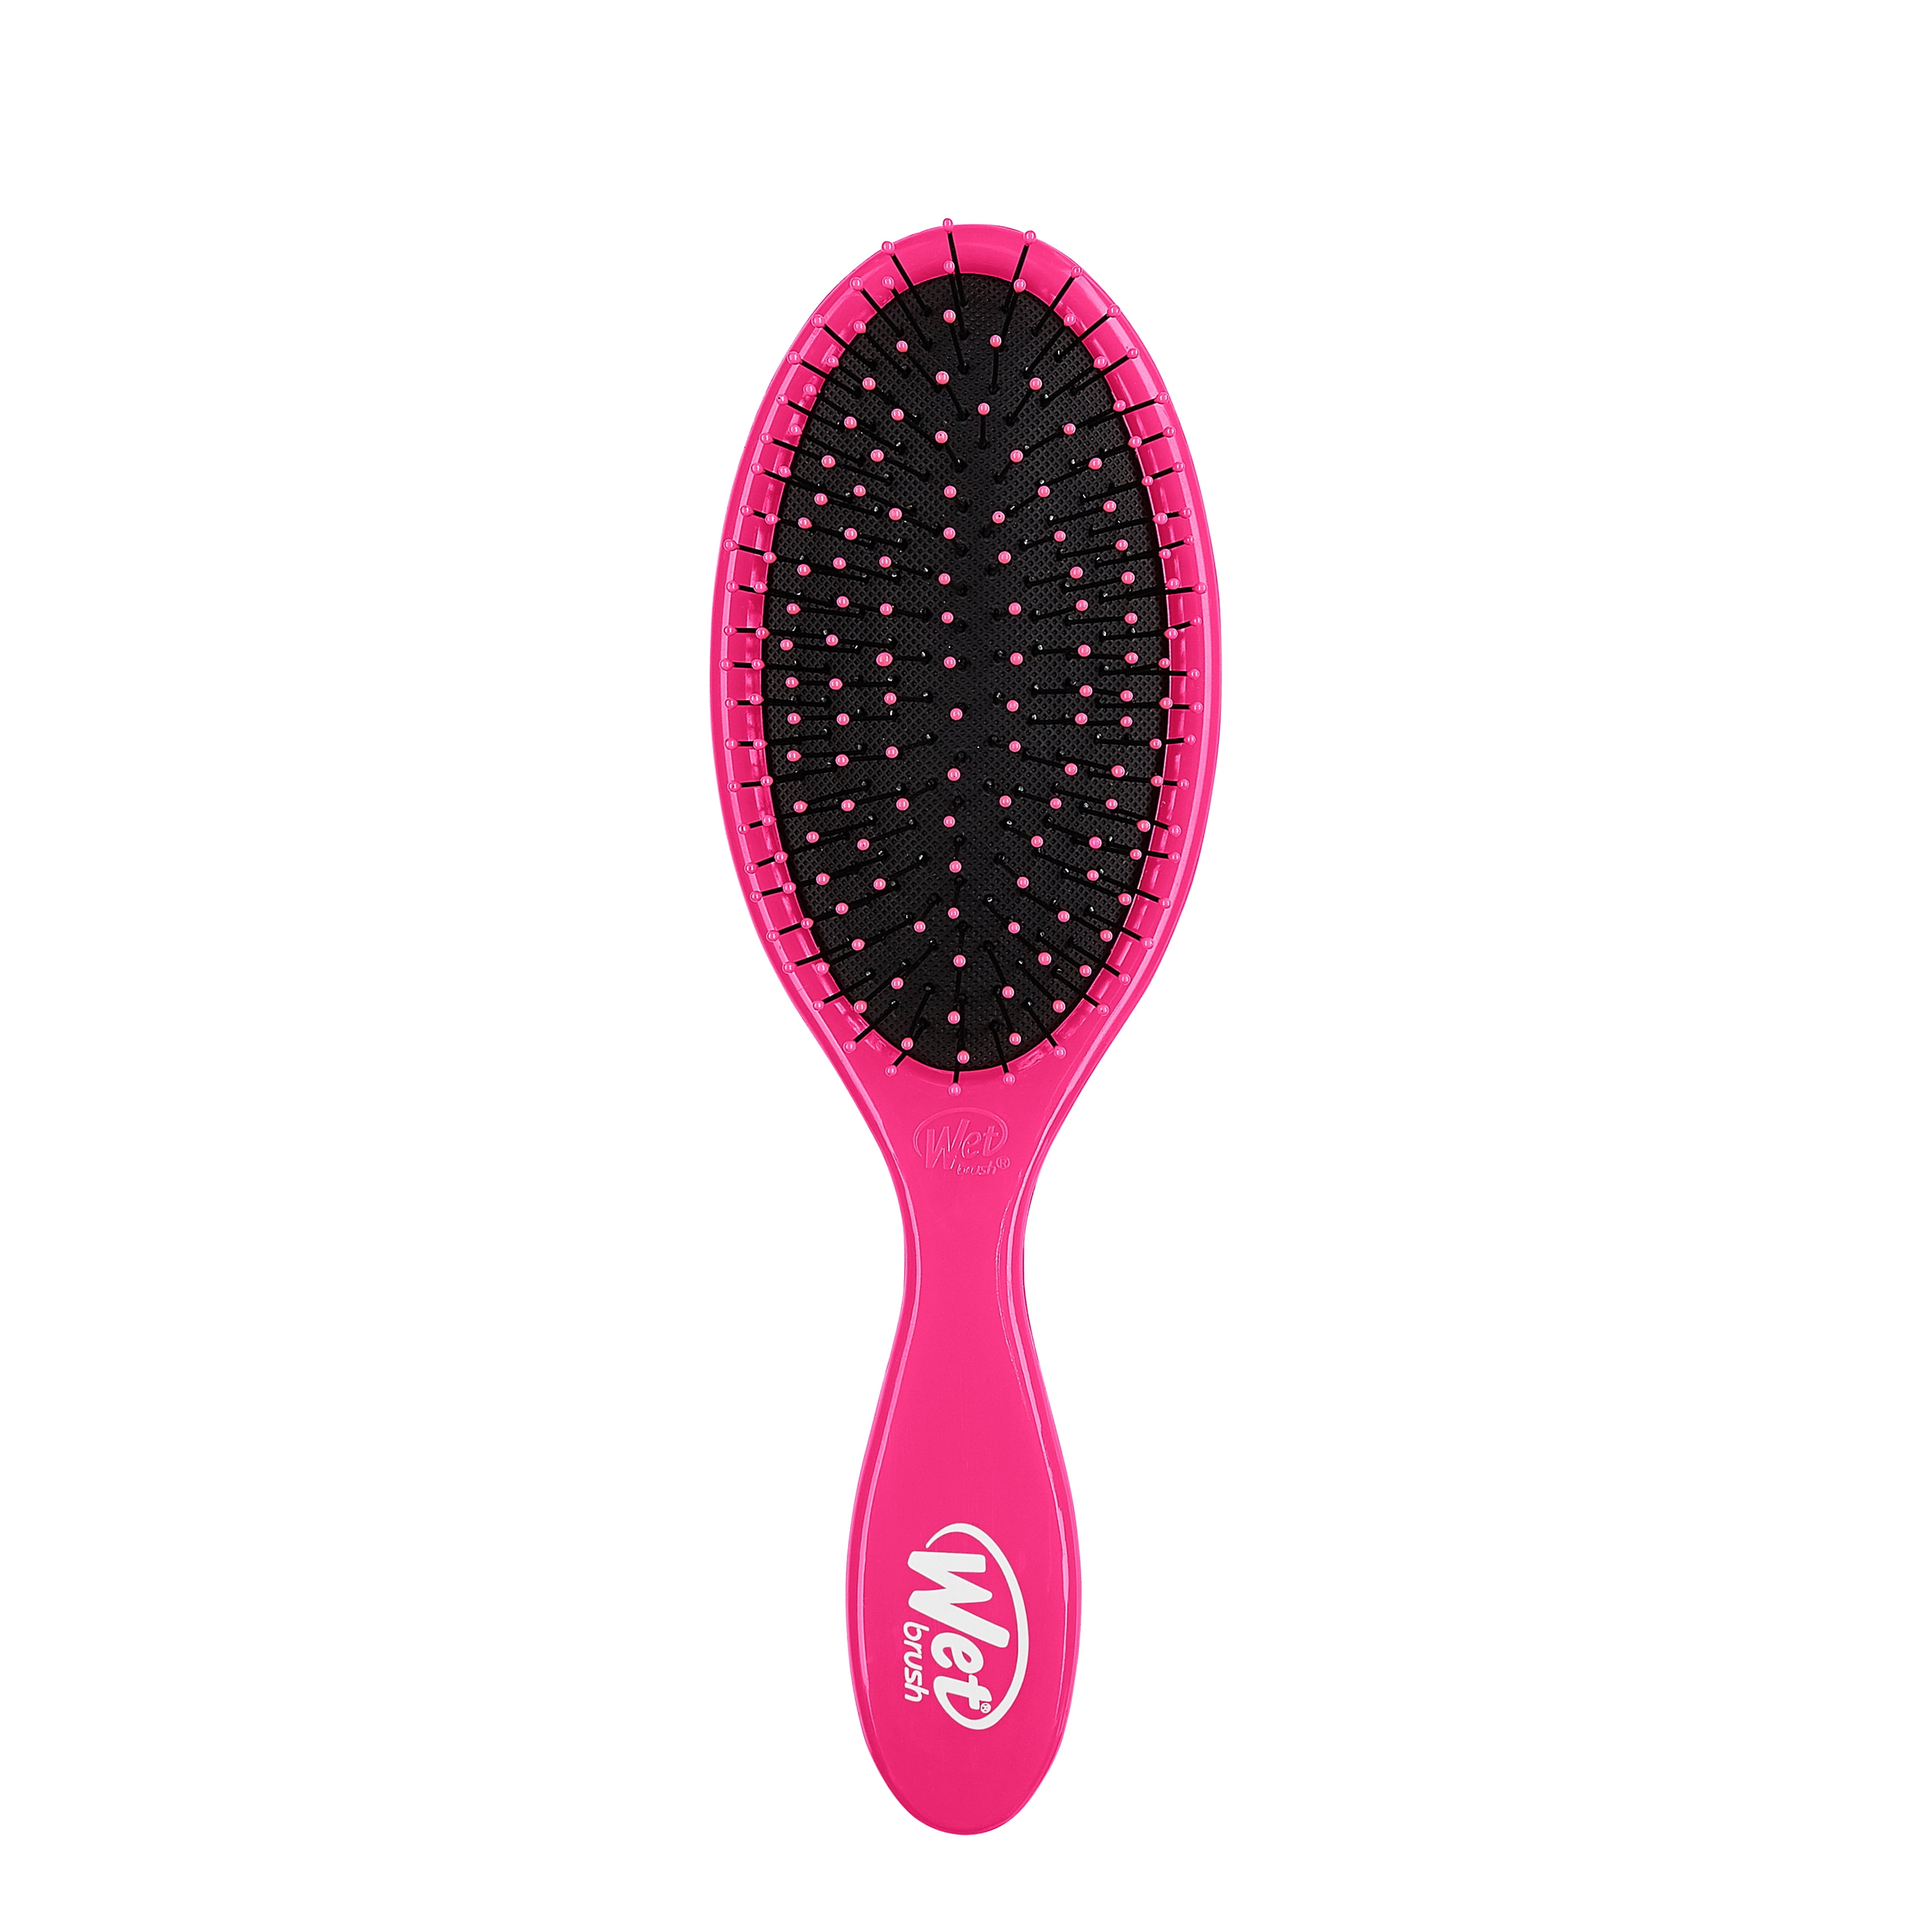 Wet Brush® The Original Detangler® - Pink